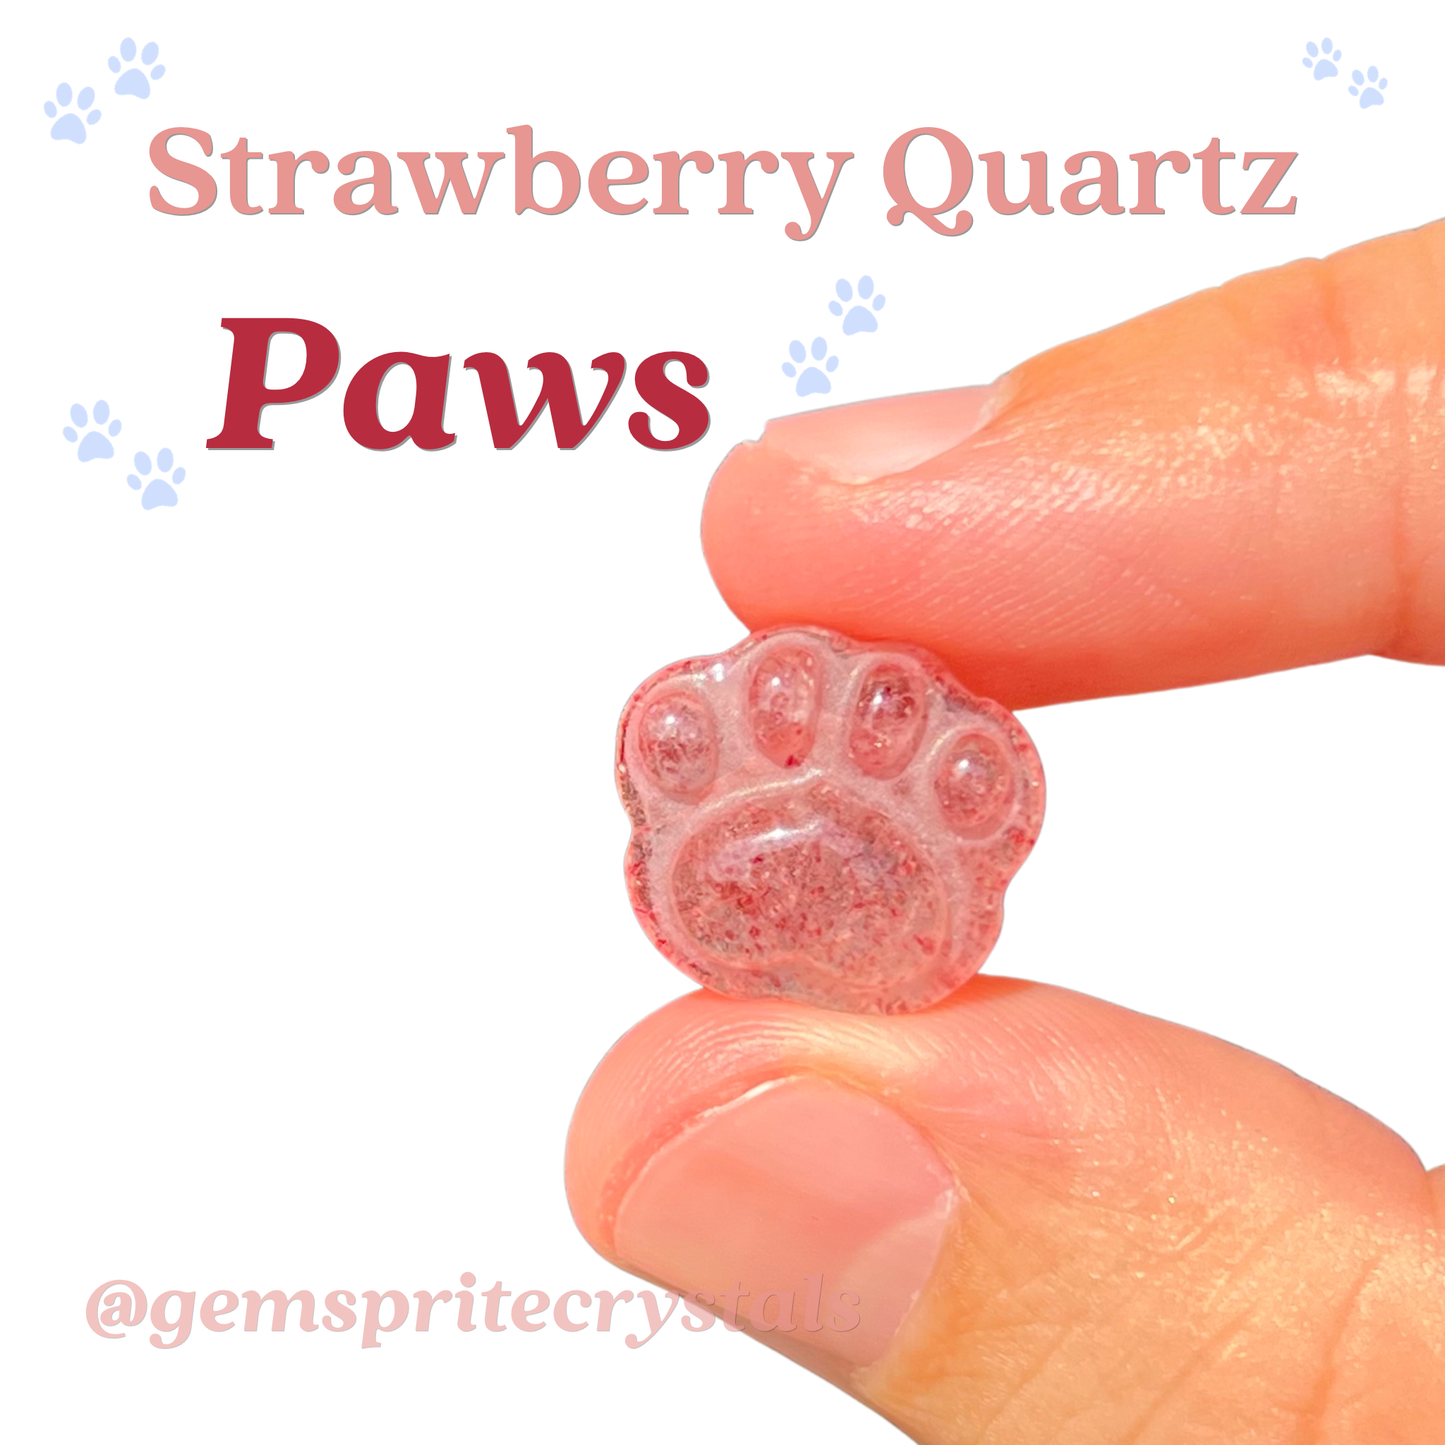 Strawberry Quartz Paws